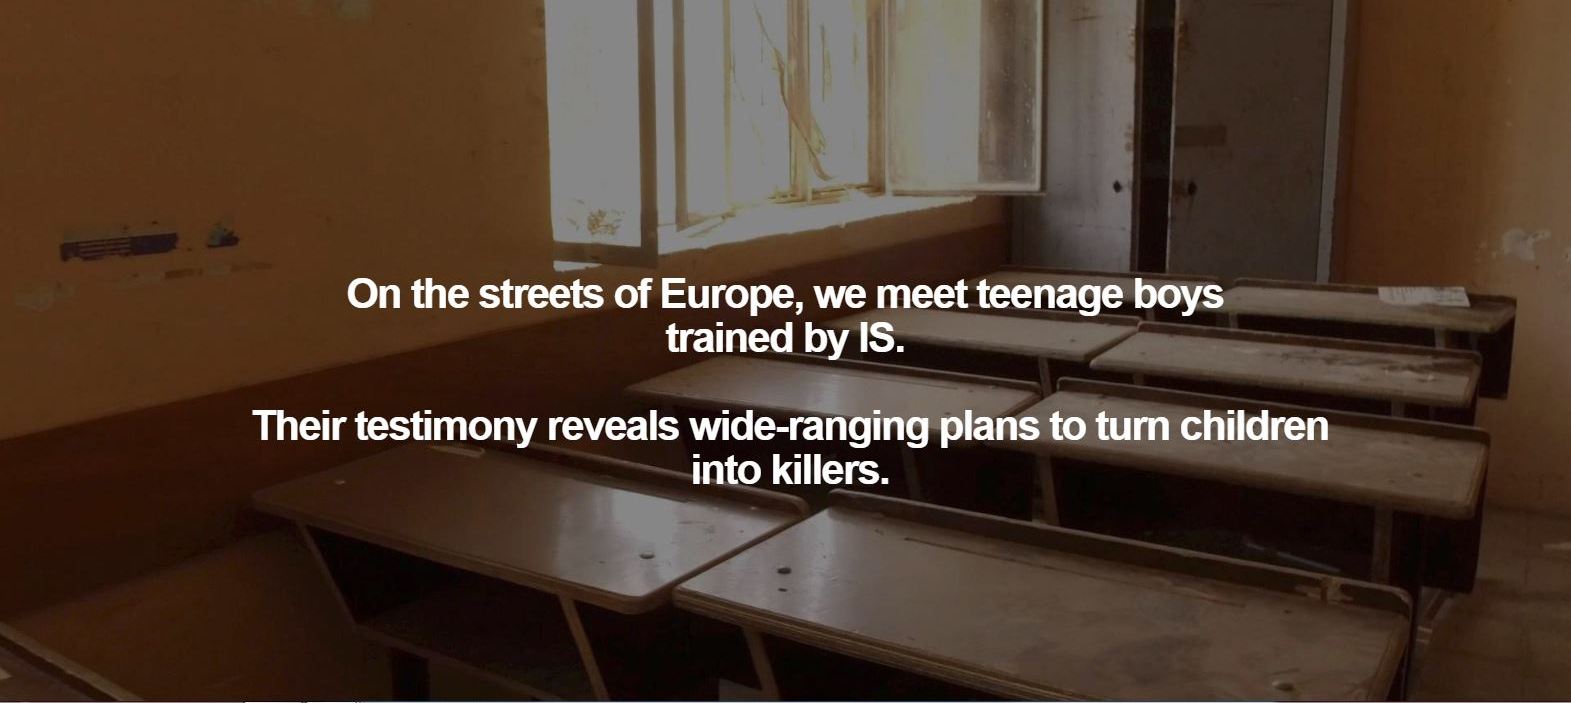 فى شوارع اوروبا اطفال مجندين من قبل داعش